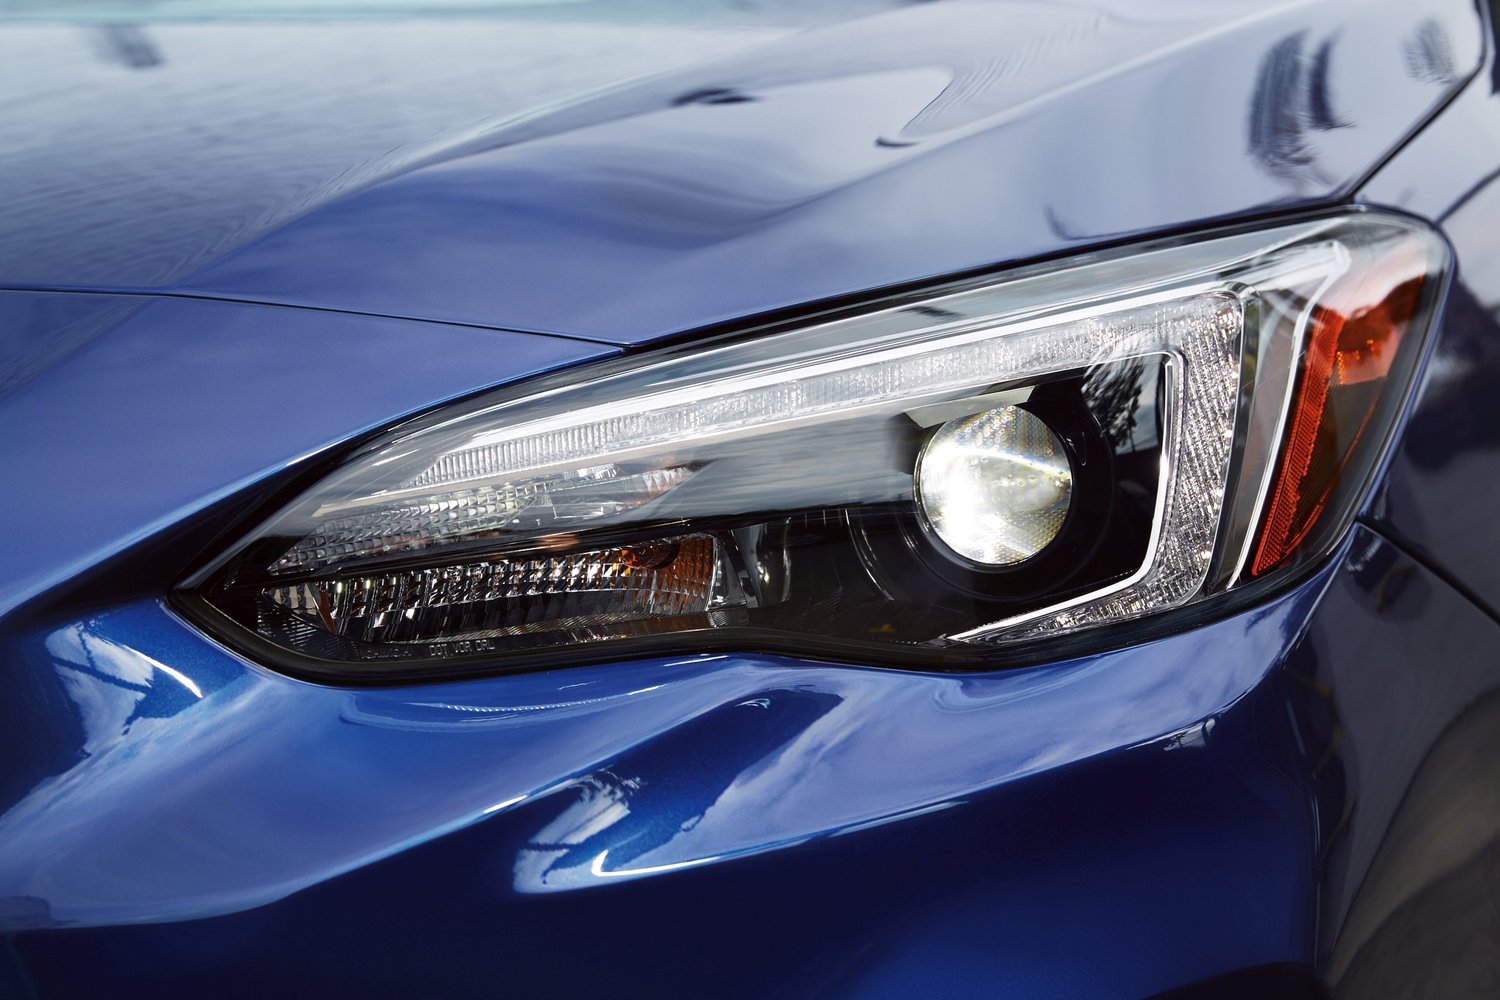 хэтчбек 5 дв. Subaru Impreza 2016г выпуска модификация 2.0 CVT (152 л.с.) 4×4